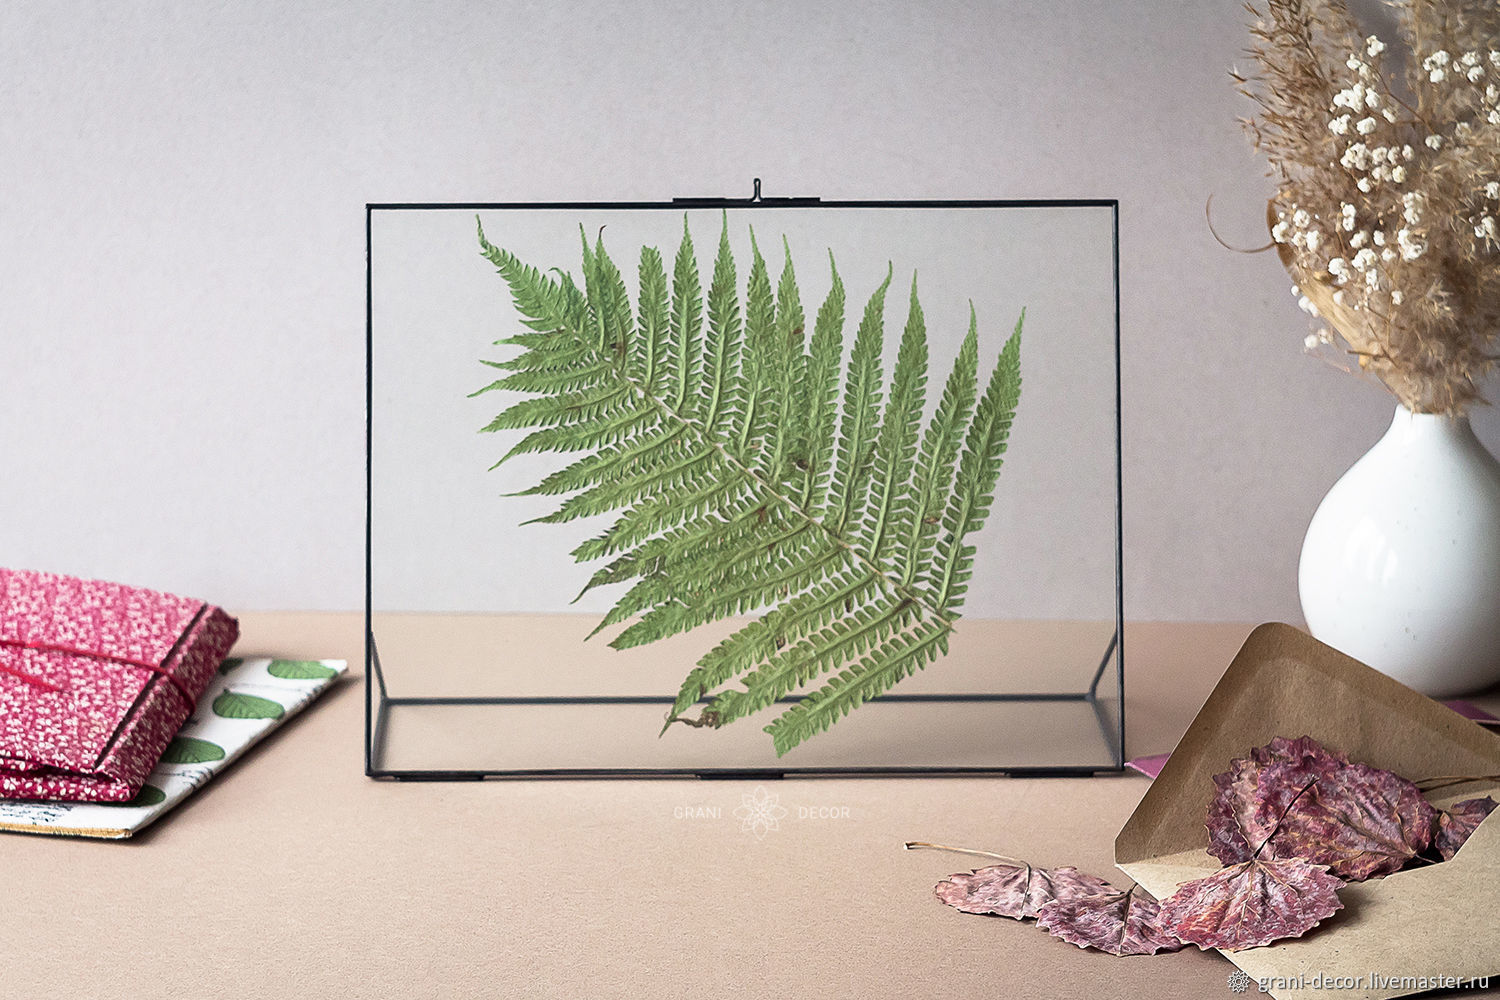  стеклянная фоторамка для гербария и сухоцветов формата А4 в .